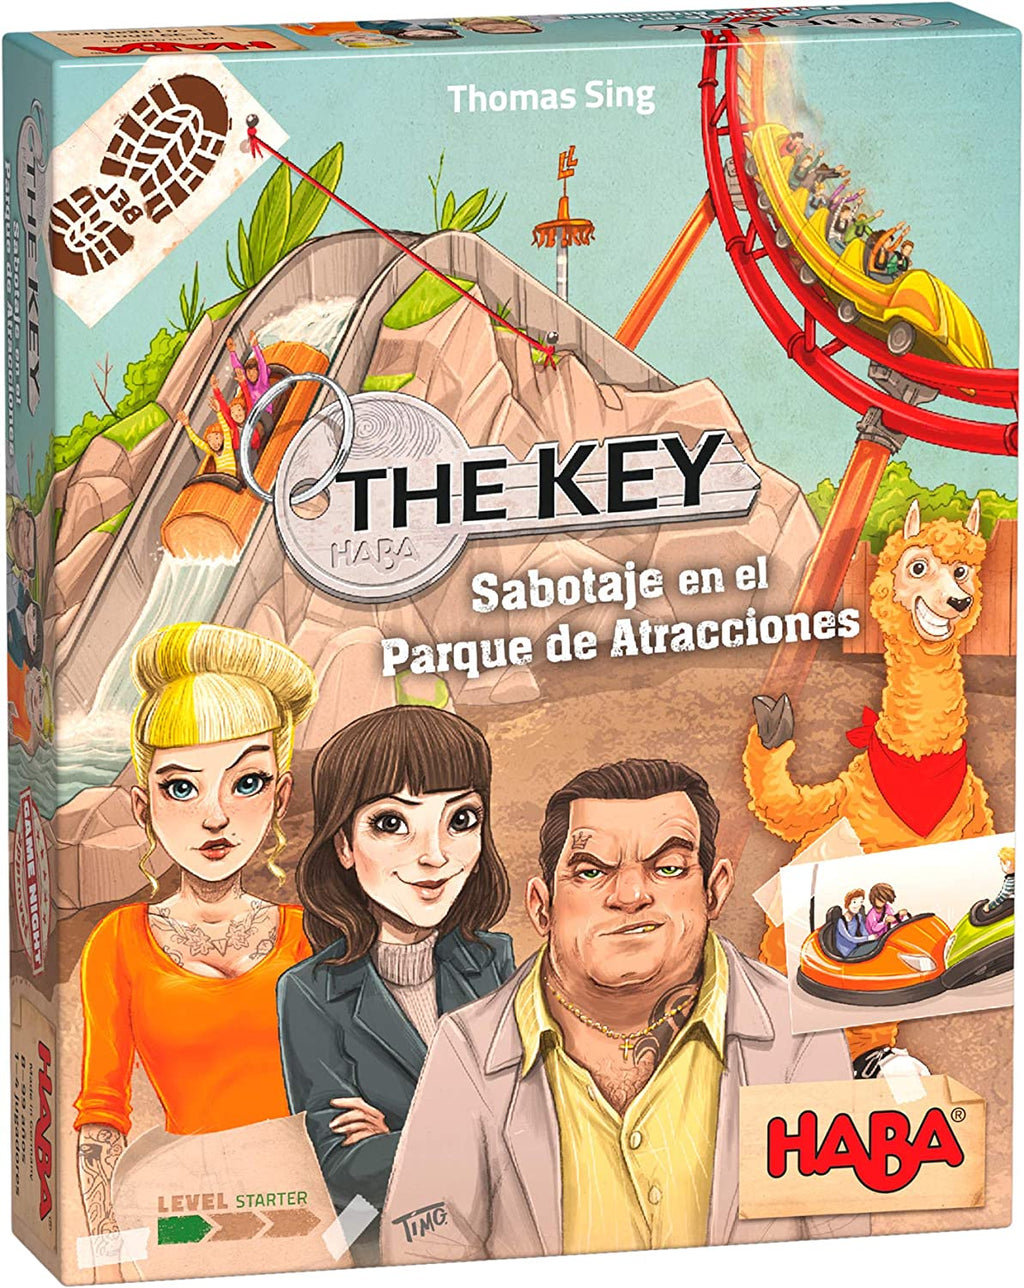 The Key Sabotaje en el Parque de Atracciones